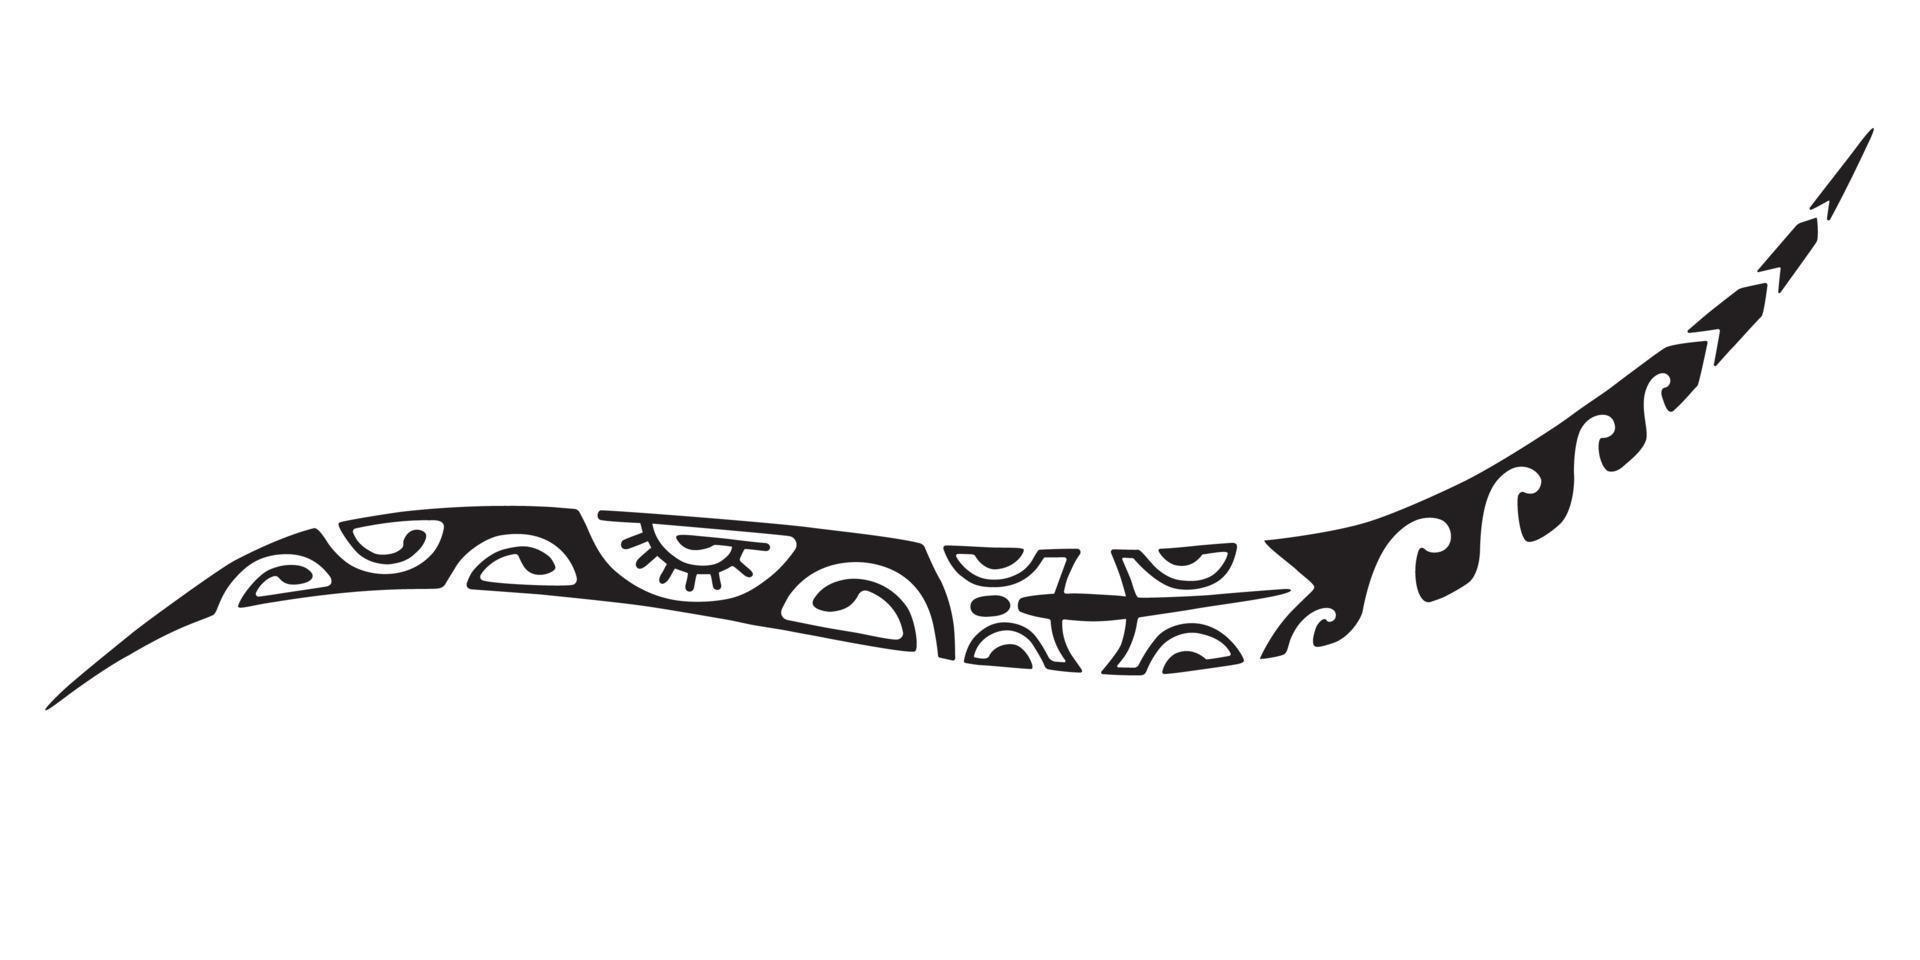 diseño maorí del tatuaje. ornamento étnico oriental. tatuaje tribal de arte. boceto vectorial de un tatuaje maorí. vector